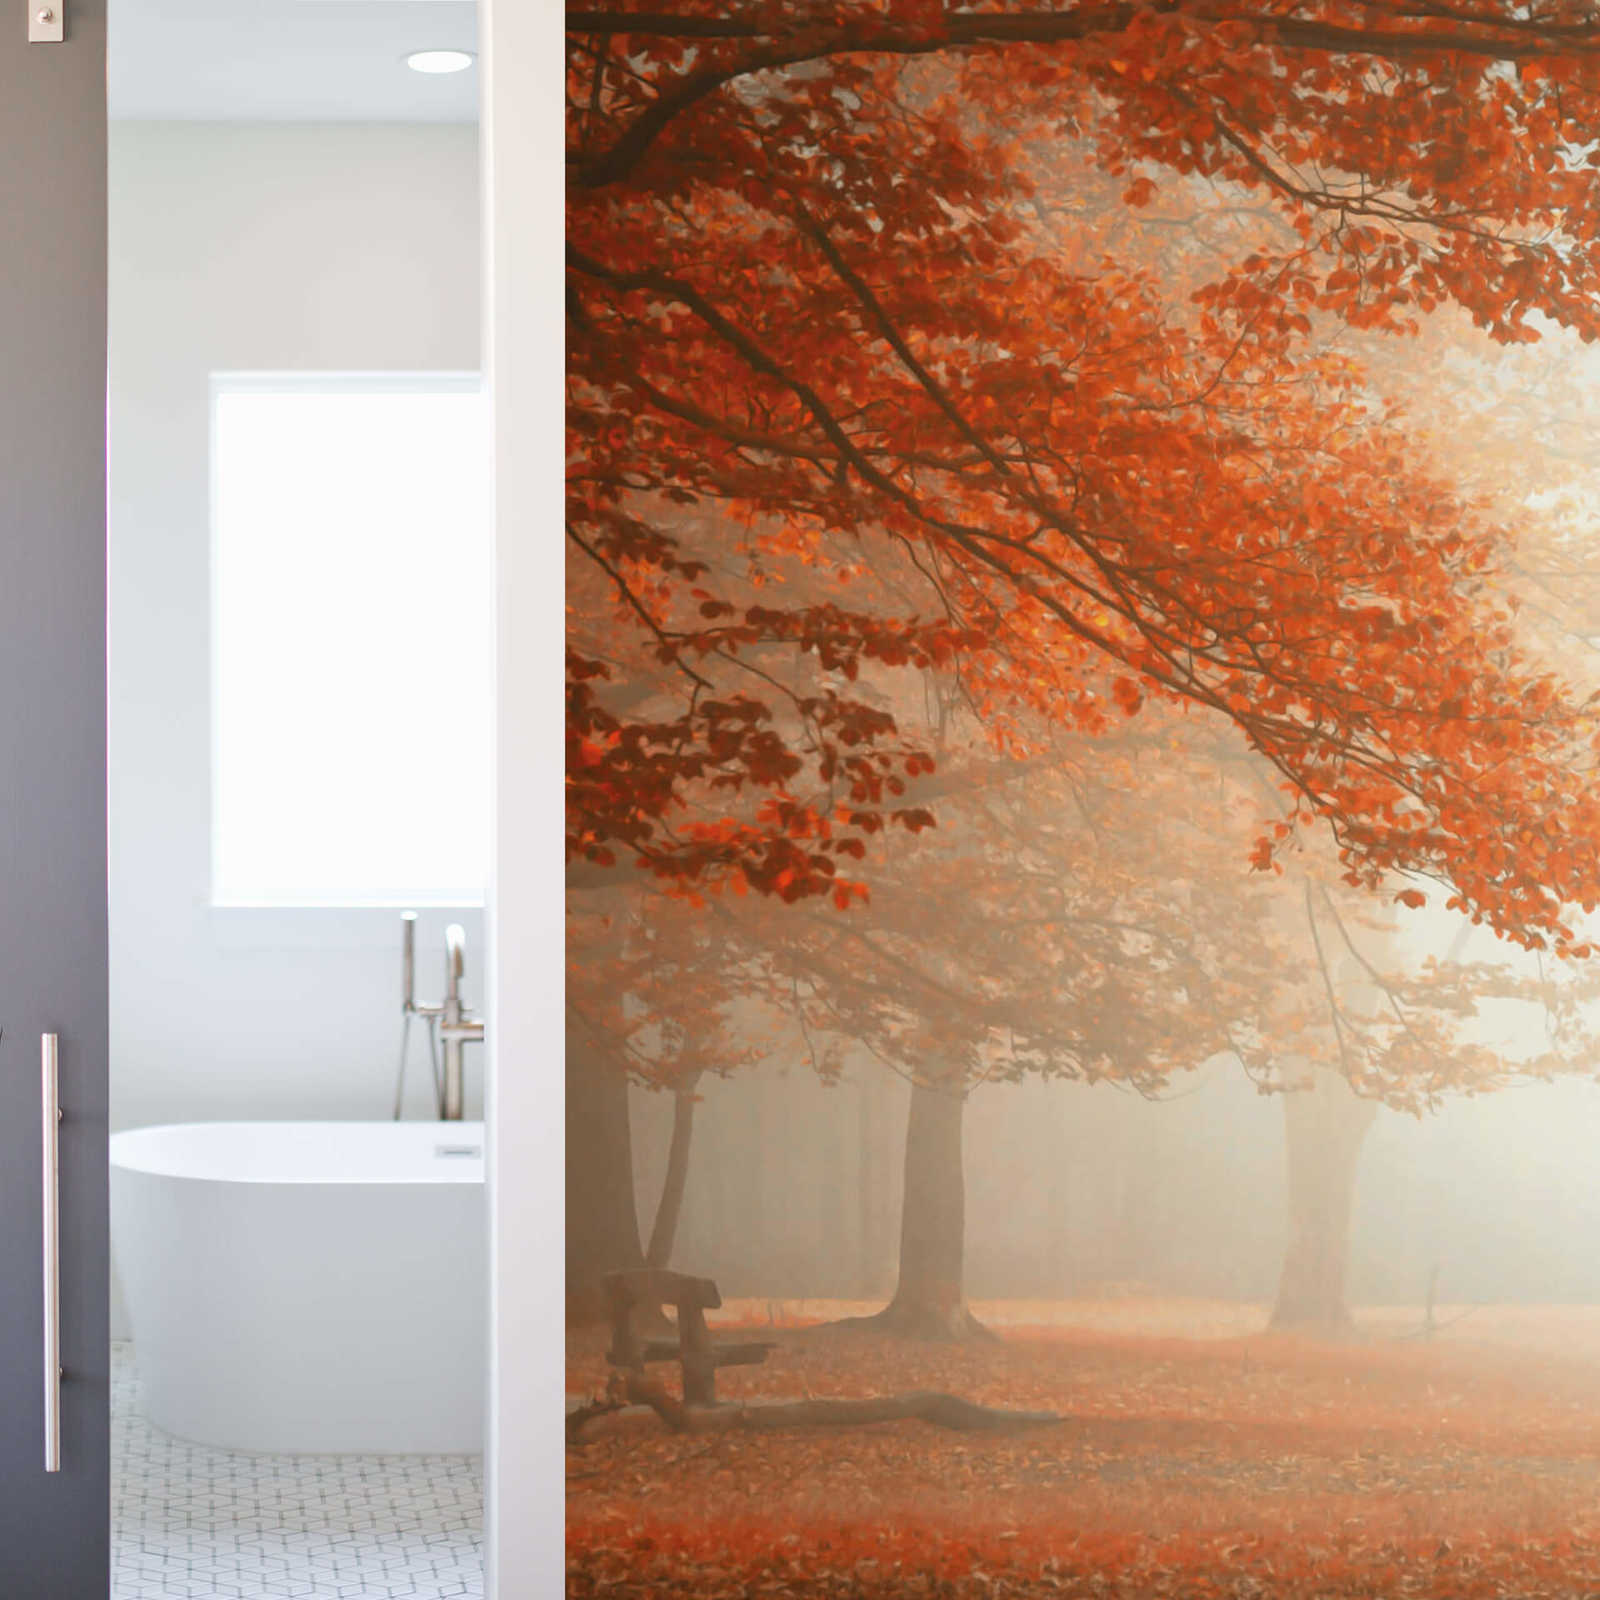             Fototapete Park im Herbst mit Nebel – Orange, Braun
        